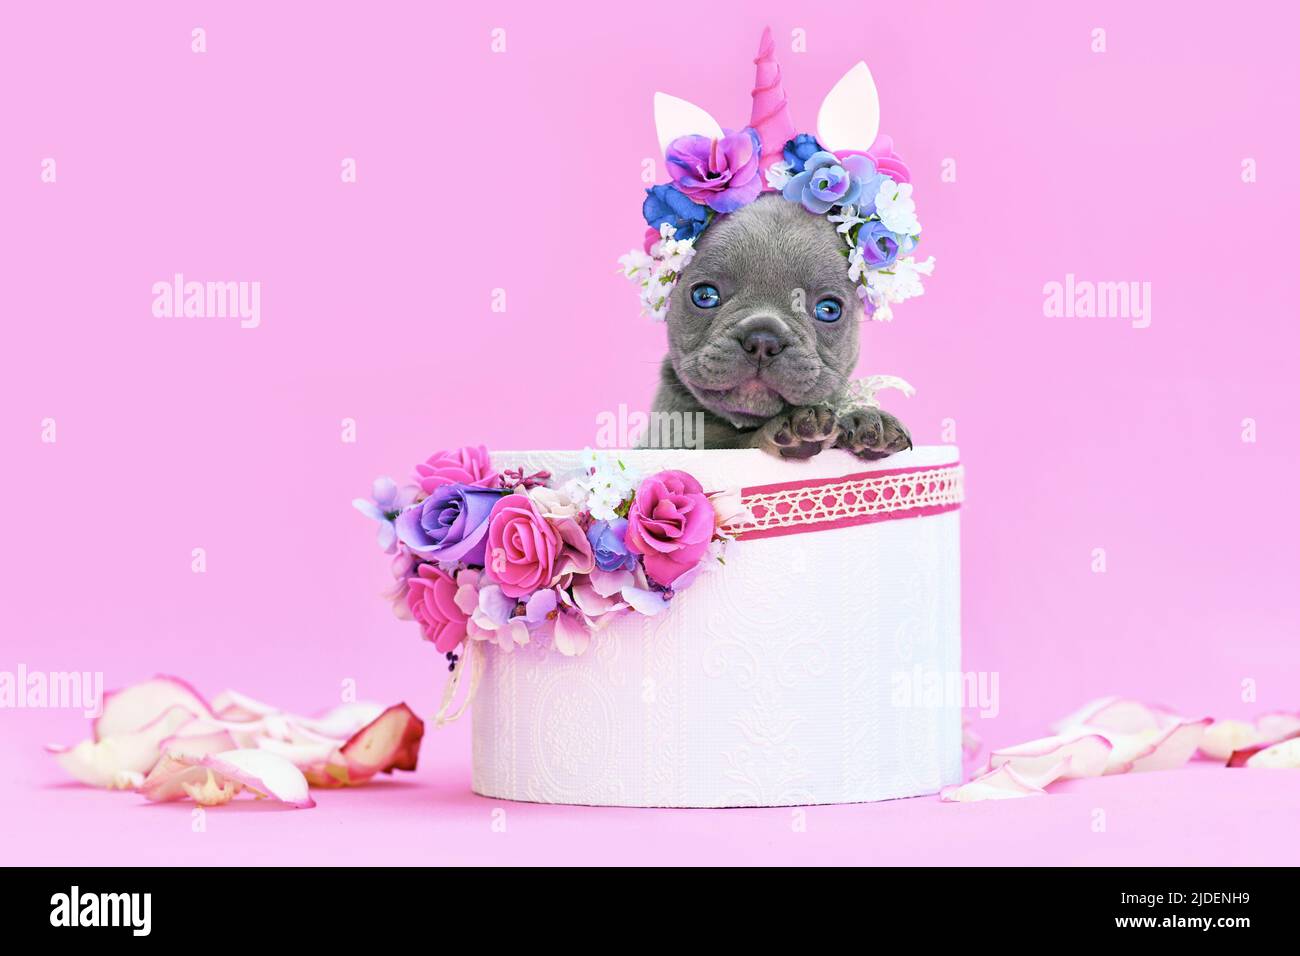 Cucciolo di cane Blue French Bulldog con archetto unicorno con corno che sbuccia fuori scatola con fiori su sfondo rosa Foto Stock